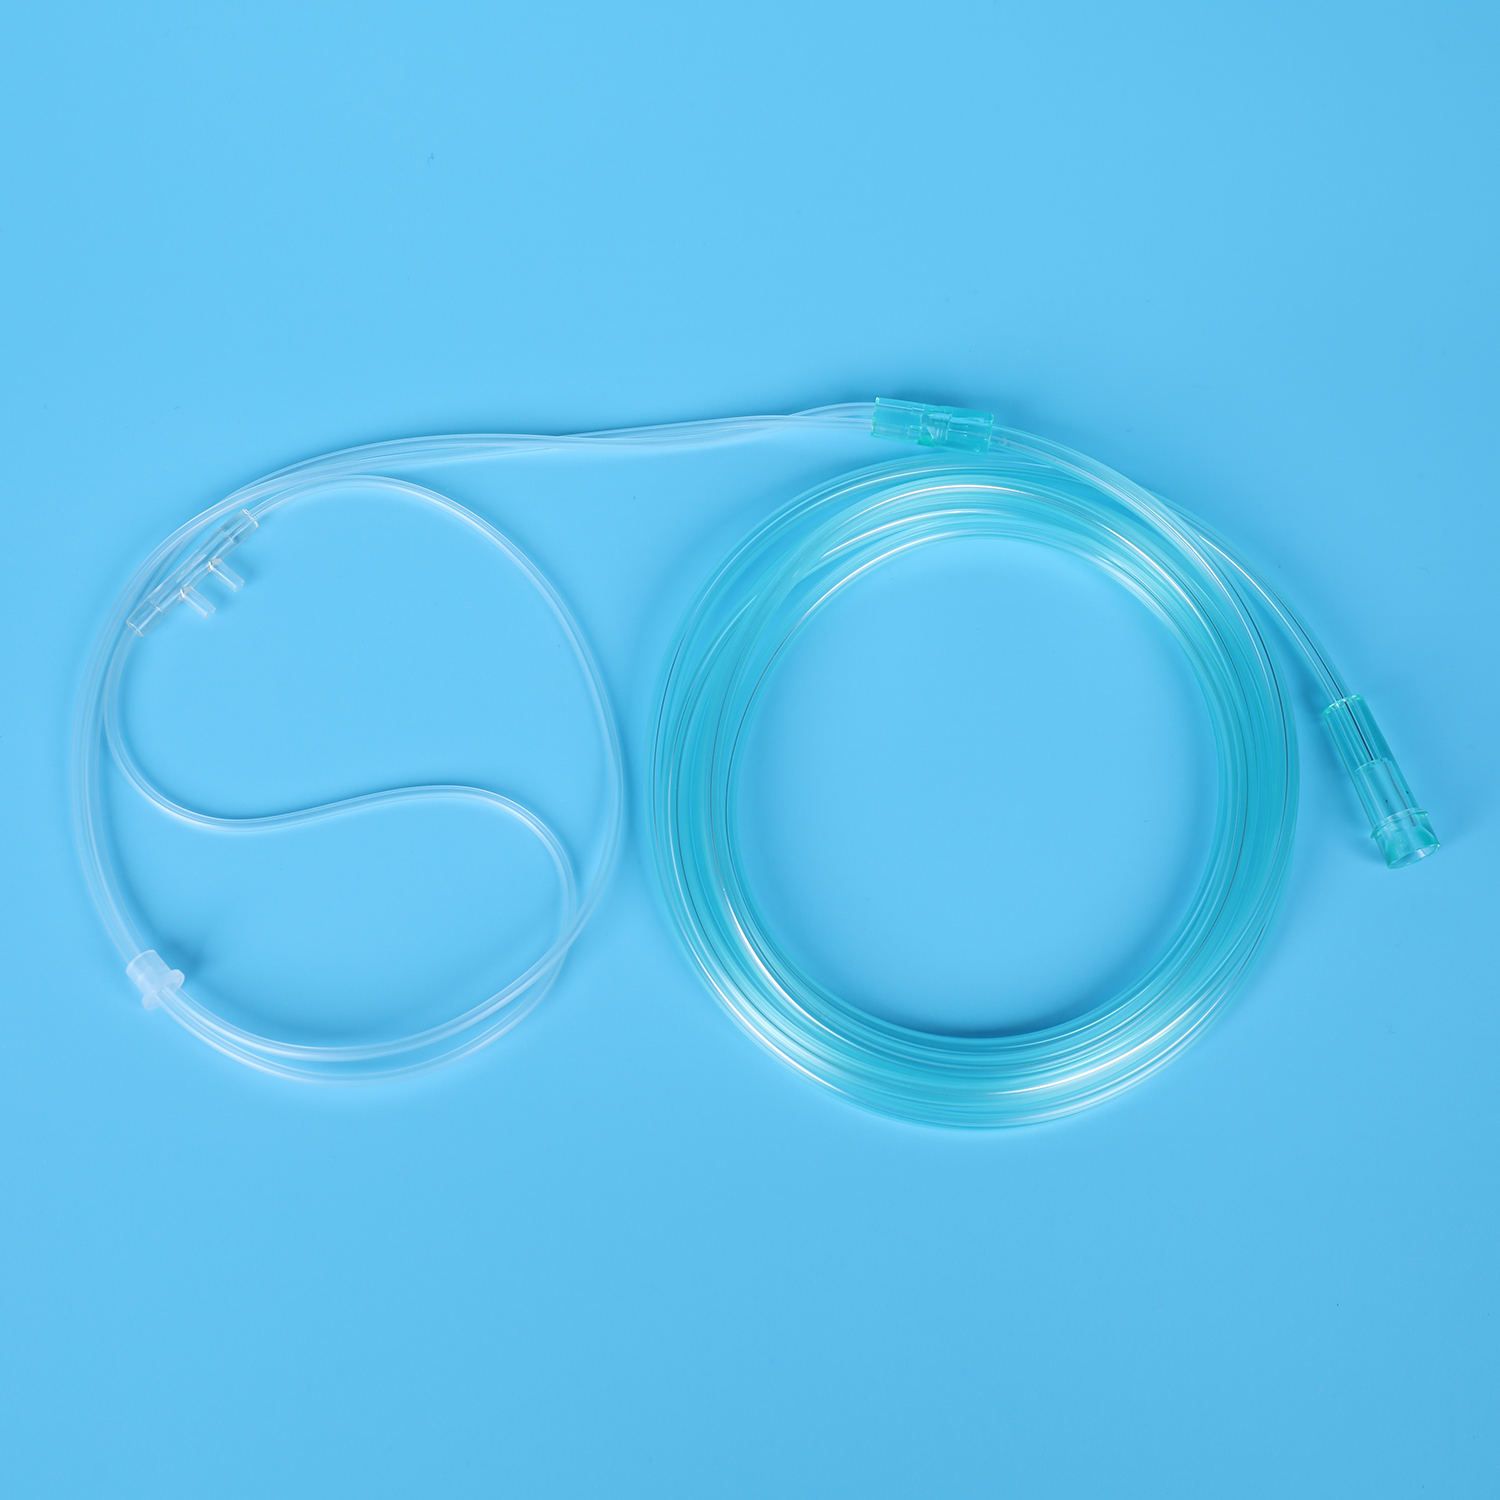 Kina producent engangs ilt næsekanyle PVC gennemsigtigt rør Medicinsk forsyning Medicinsk materiale Blød spids iltterapi anordning iltkanyle